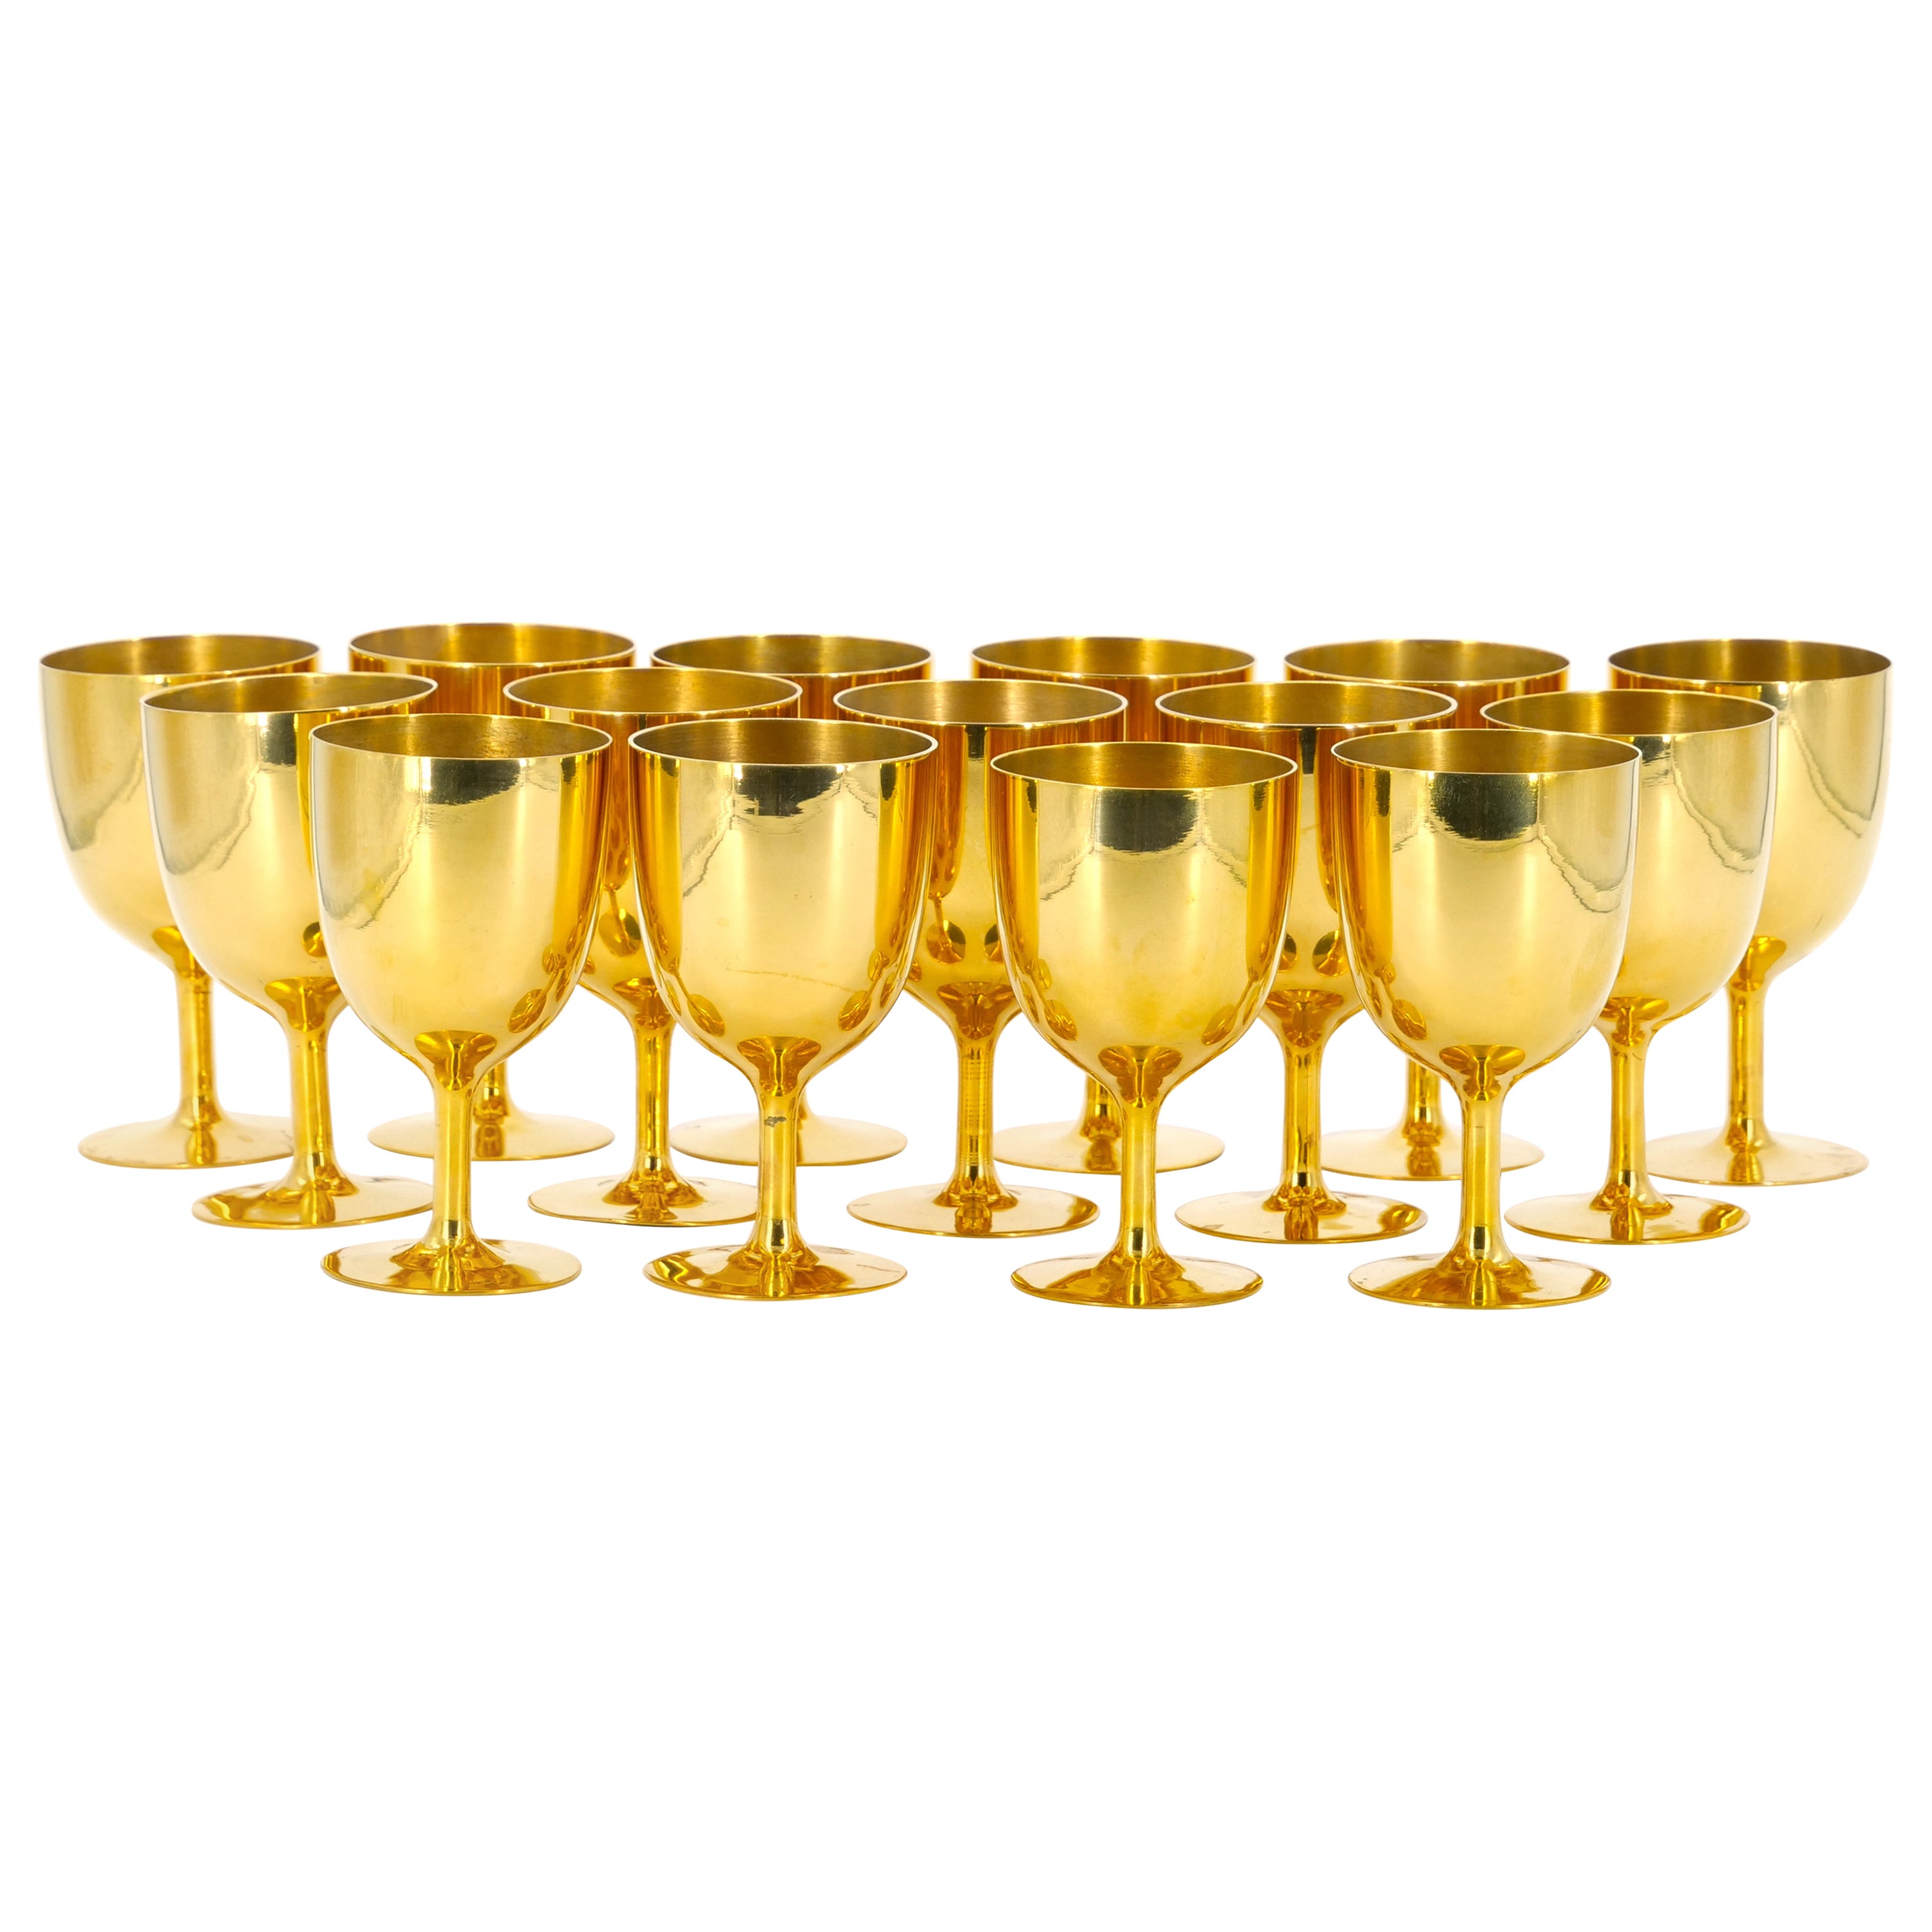 Gilet anglais Sheffield doré  Service de gobelets à liqueur/aperitif / 15 personnes